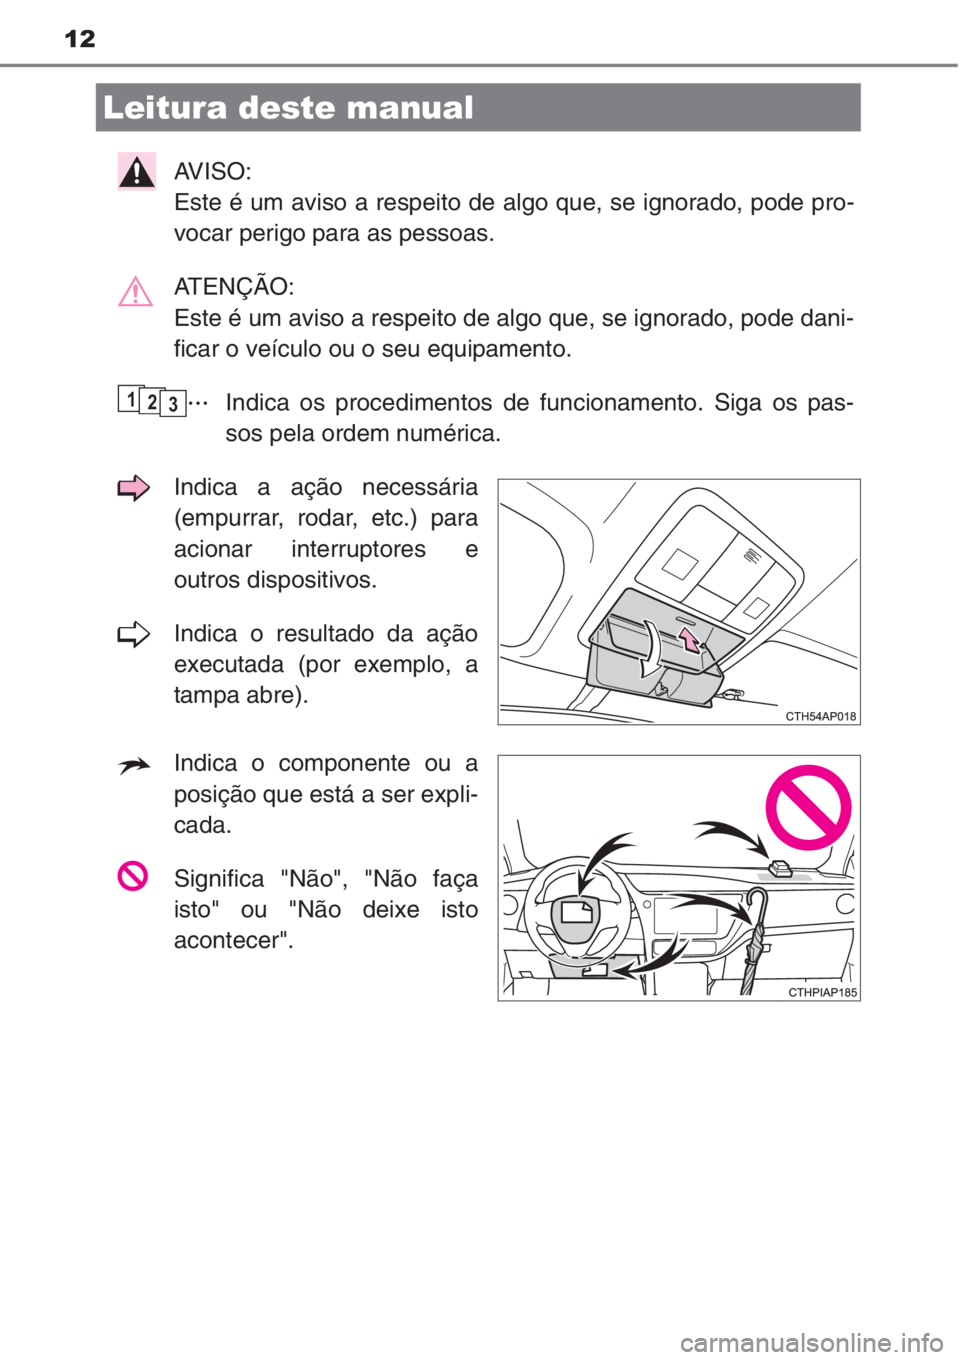 TOYOTA AURIS 2016  Manual de utilização (in Portuguese) 12
AVISO: 
Este é um aviso a respeito de algo que, se ignorado, pode pro-
vocar perigo para as pessoas.
ATENÇÃO: 
Este é um aviso a respeito de algo que, se ignorado, pode dani-
ficar o veículo o